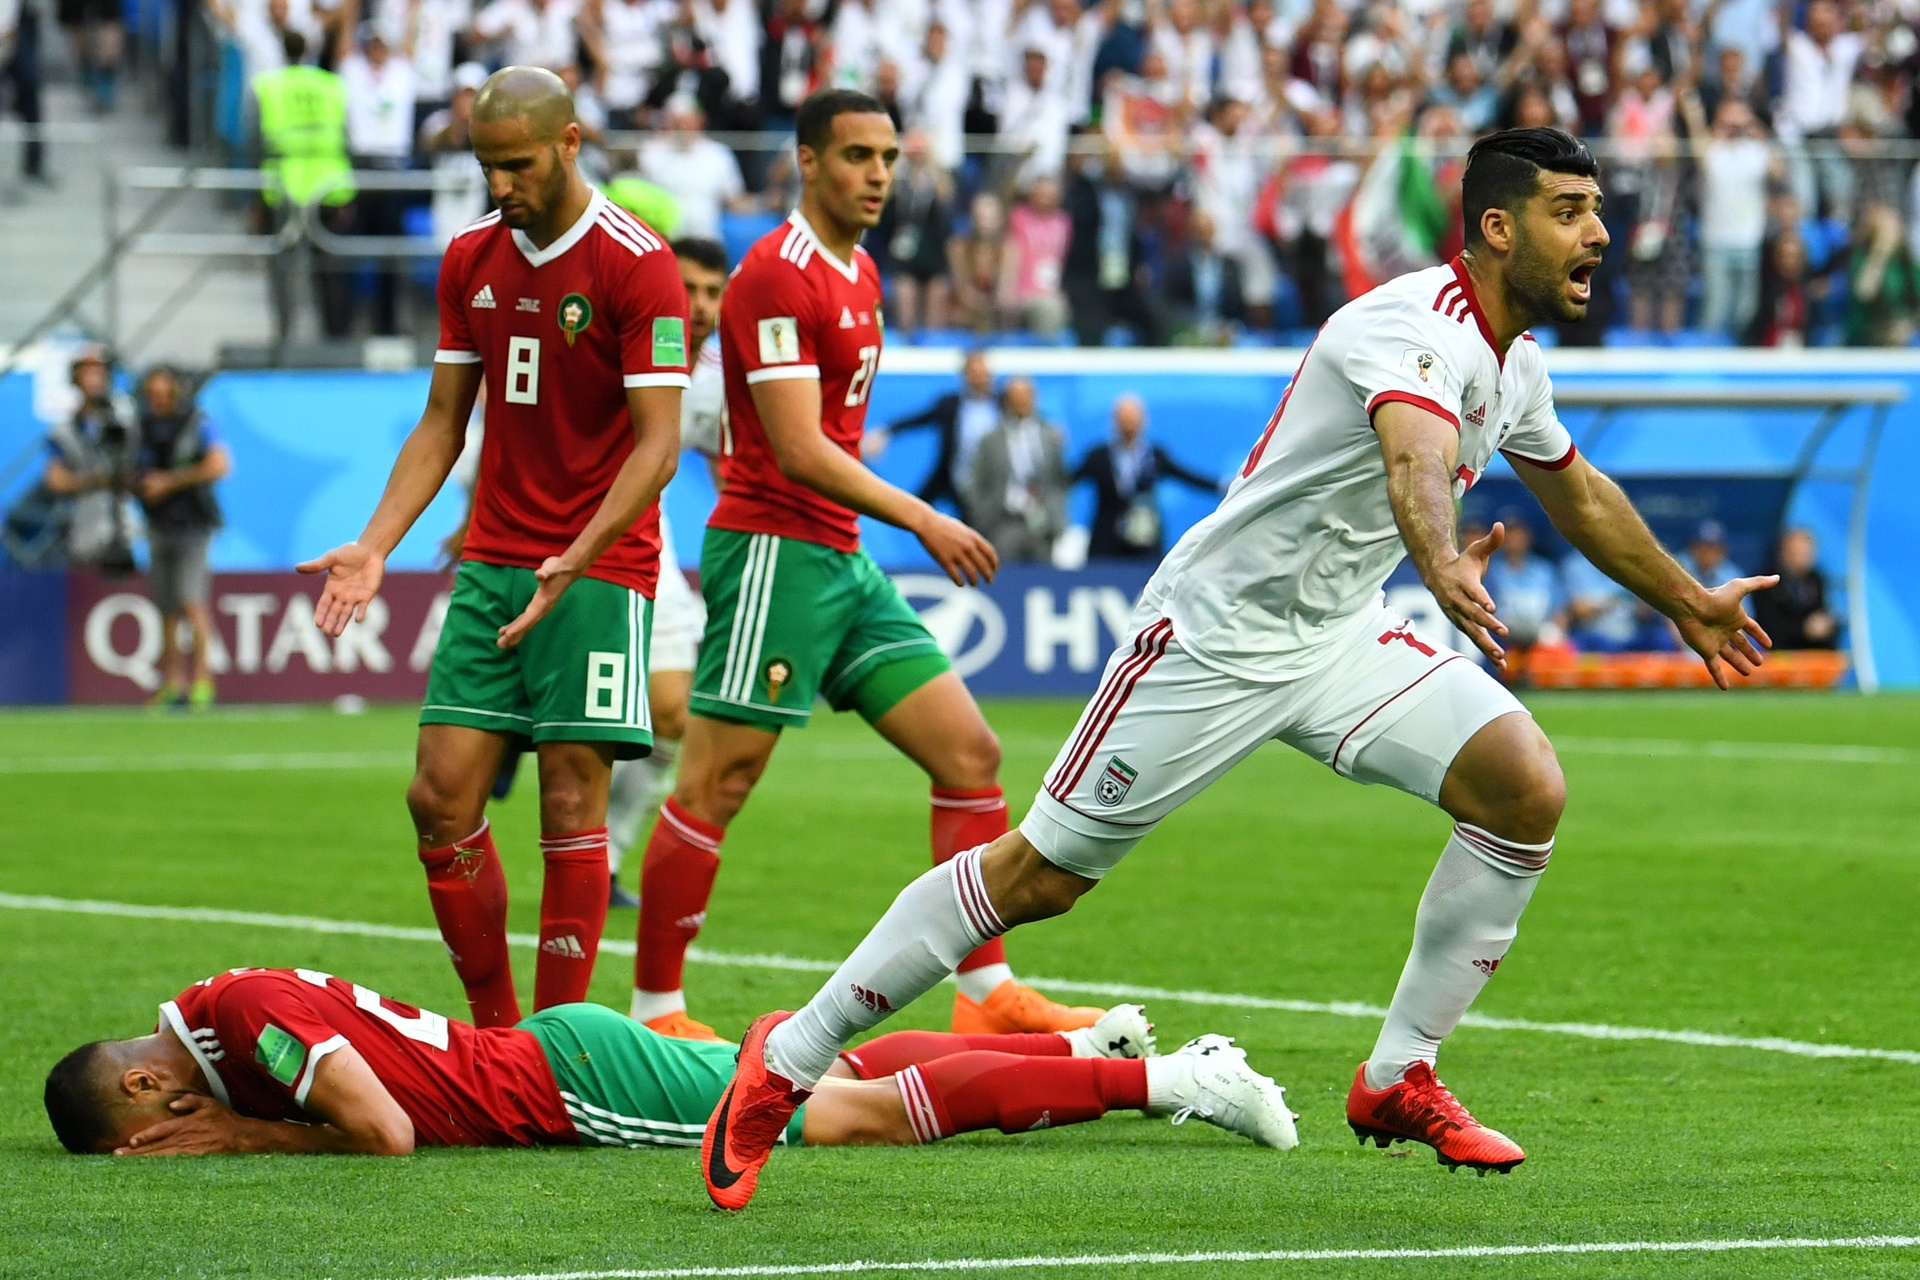 SP Rusija Iran - Portugal 1-1